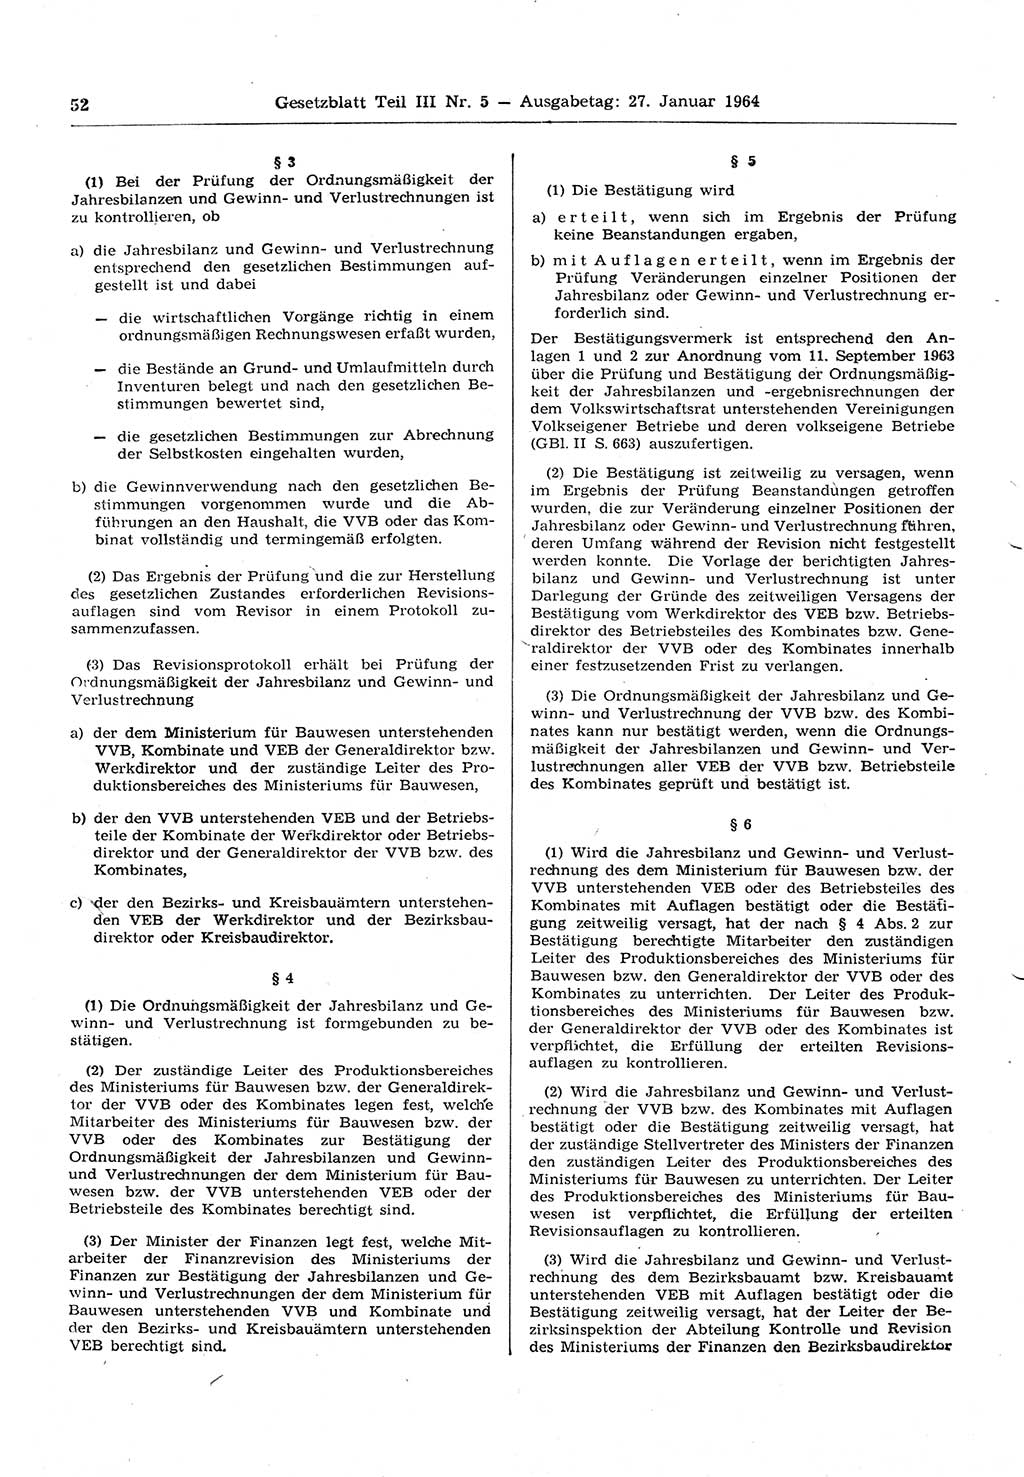 Gesetzblatt (GBl.) der Deutschen Demokratischen Republik (DDR) Teil ⅠⅠⅠ 1964, Seite 52 (GBl. DDR ⅠⅠⅠ 1964, S. 52)